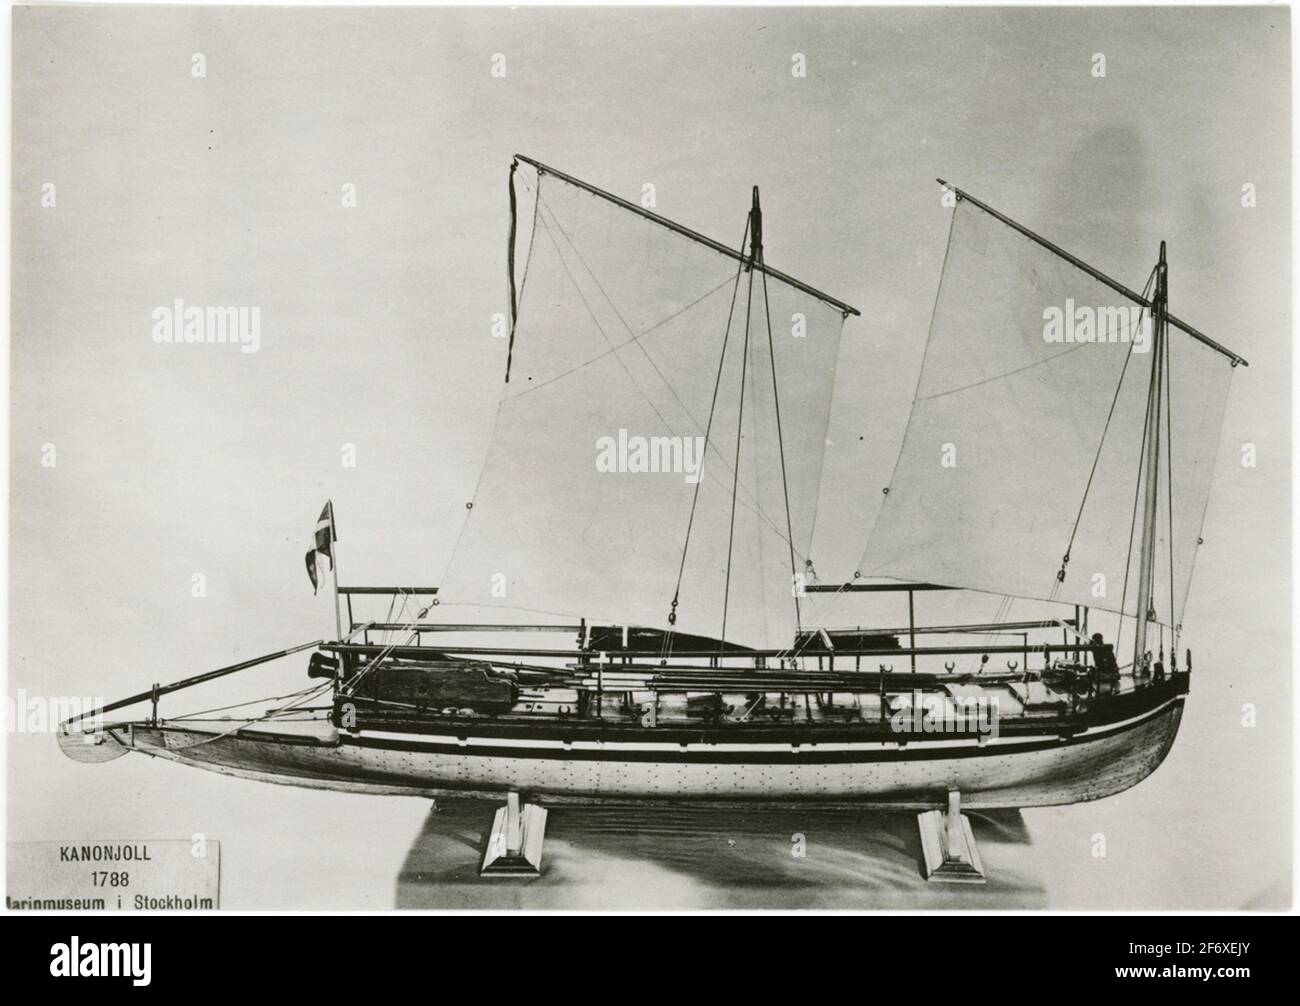 Das Bild zeigt ein Modell einer Kanonenkugel, die im Maritime History Museum Stockholm ist.das Boot ist mit zwei Logger Segel manipuliert.auf dem Deck, die Ruder und auf den Akten sind die Kanonen .. Das Bild zeigt ein Modell einer Kanonenkugel, die sich im Schifffahrtshistorischen Museum Stockholm befindet.das Boot ist mit zwei Logger-Segeln manipuliert.auf dem Deck liegen die Ruder und auf den Acts steht die Kanone. Stockfoto